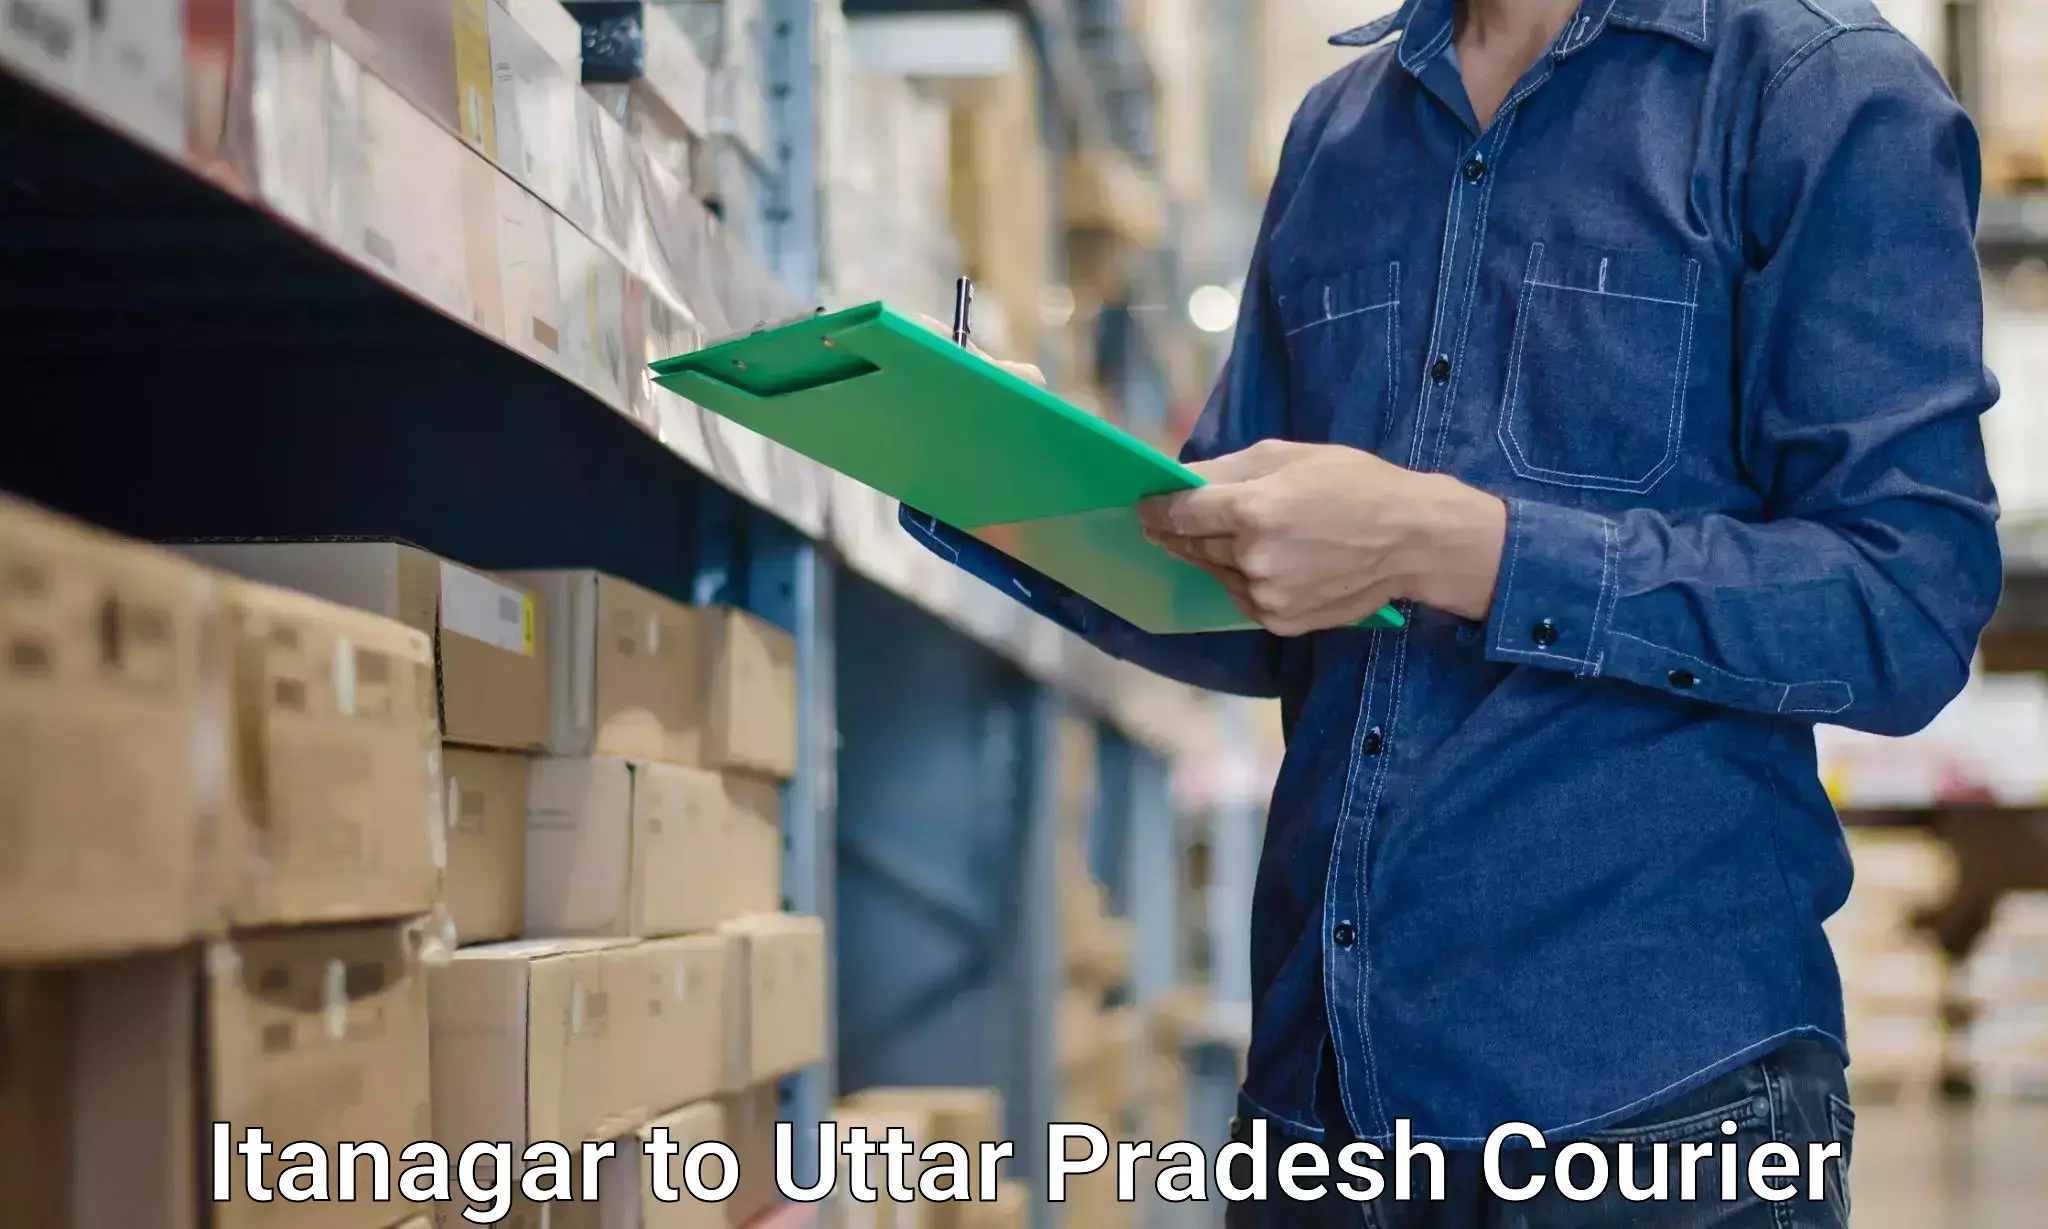 Expert moving and storage Itanagar to Sambhal